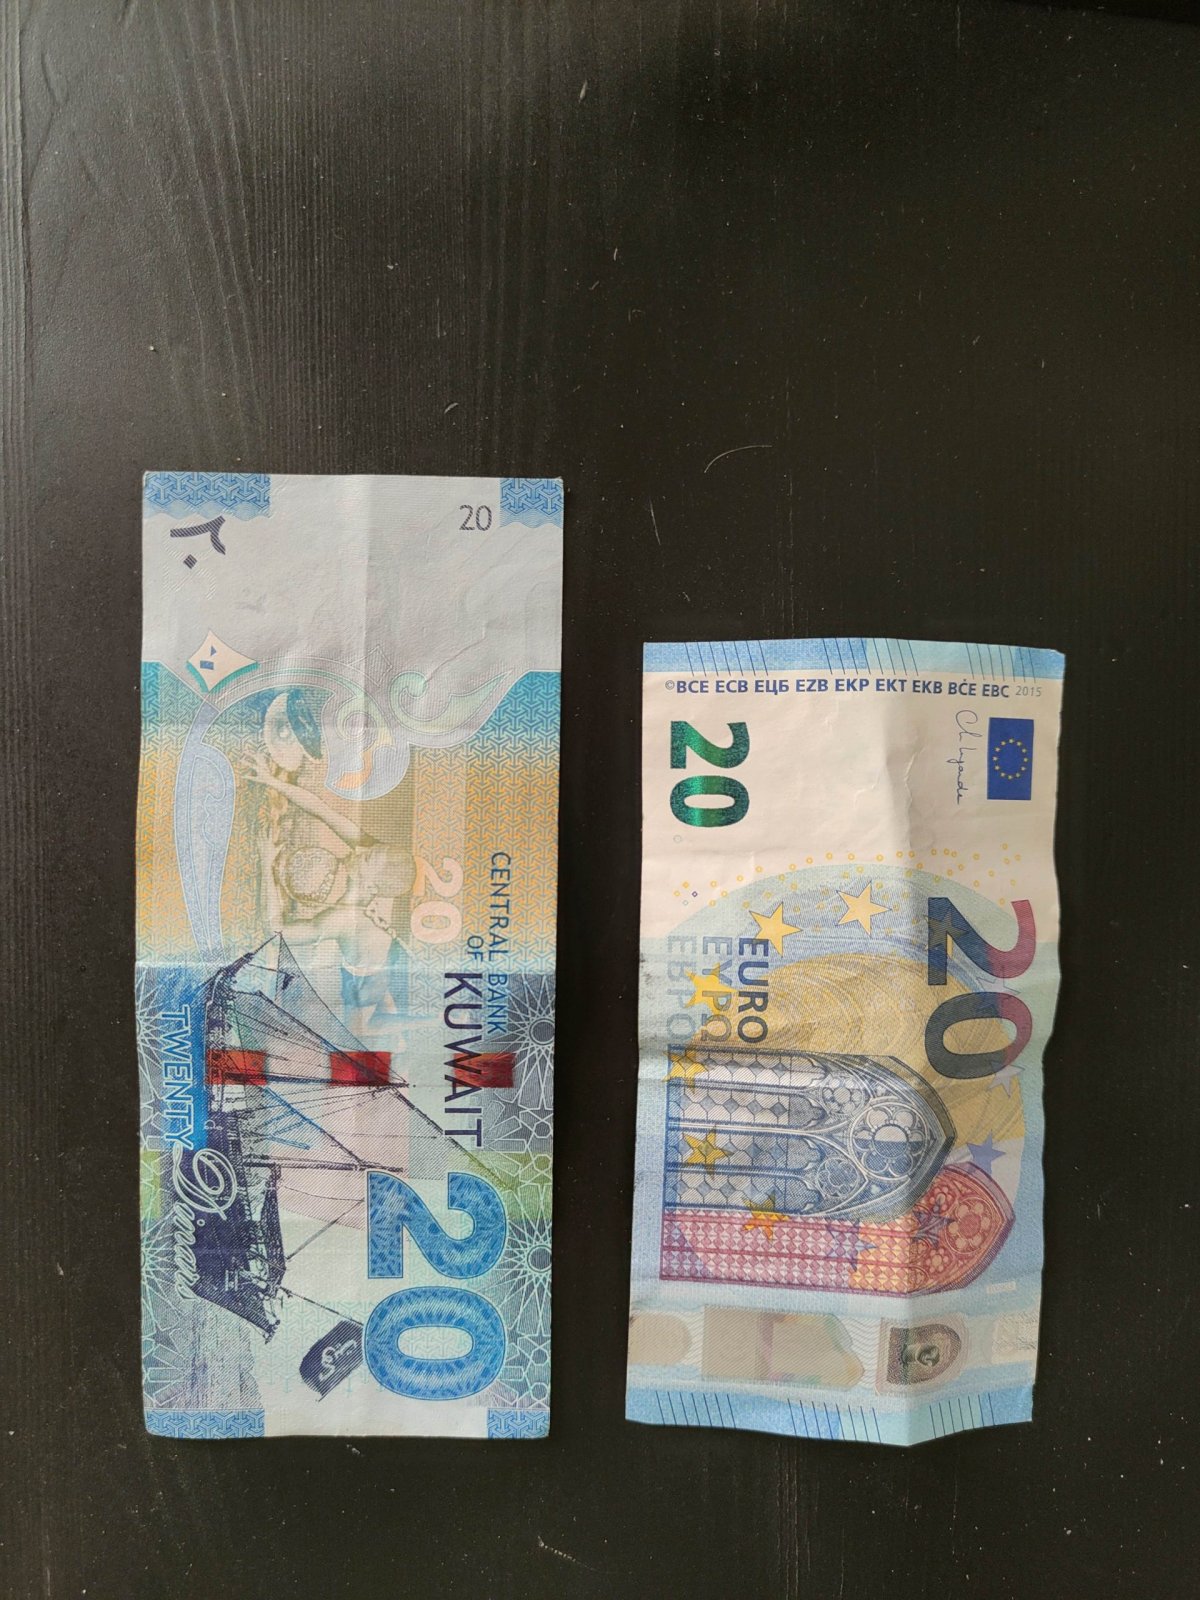 Obě modré. Jedna má hodnotu 60€ a druhá 20€